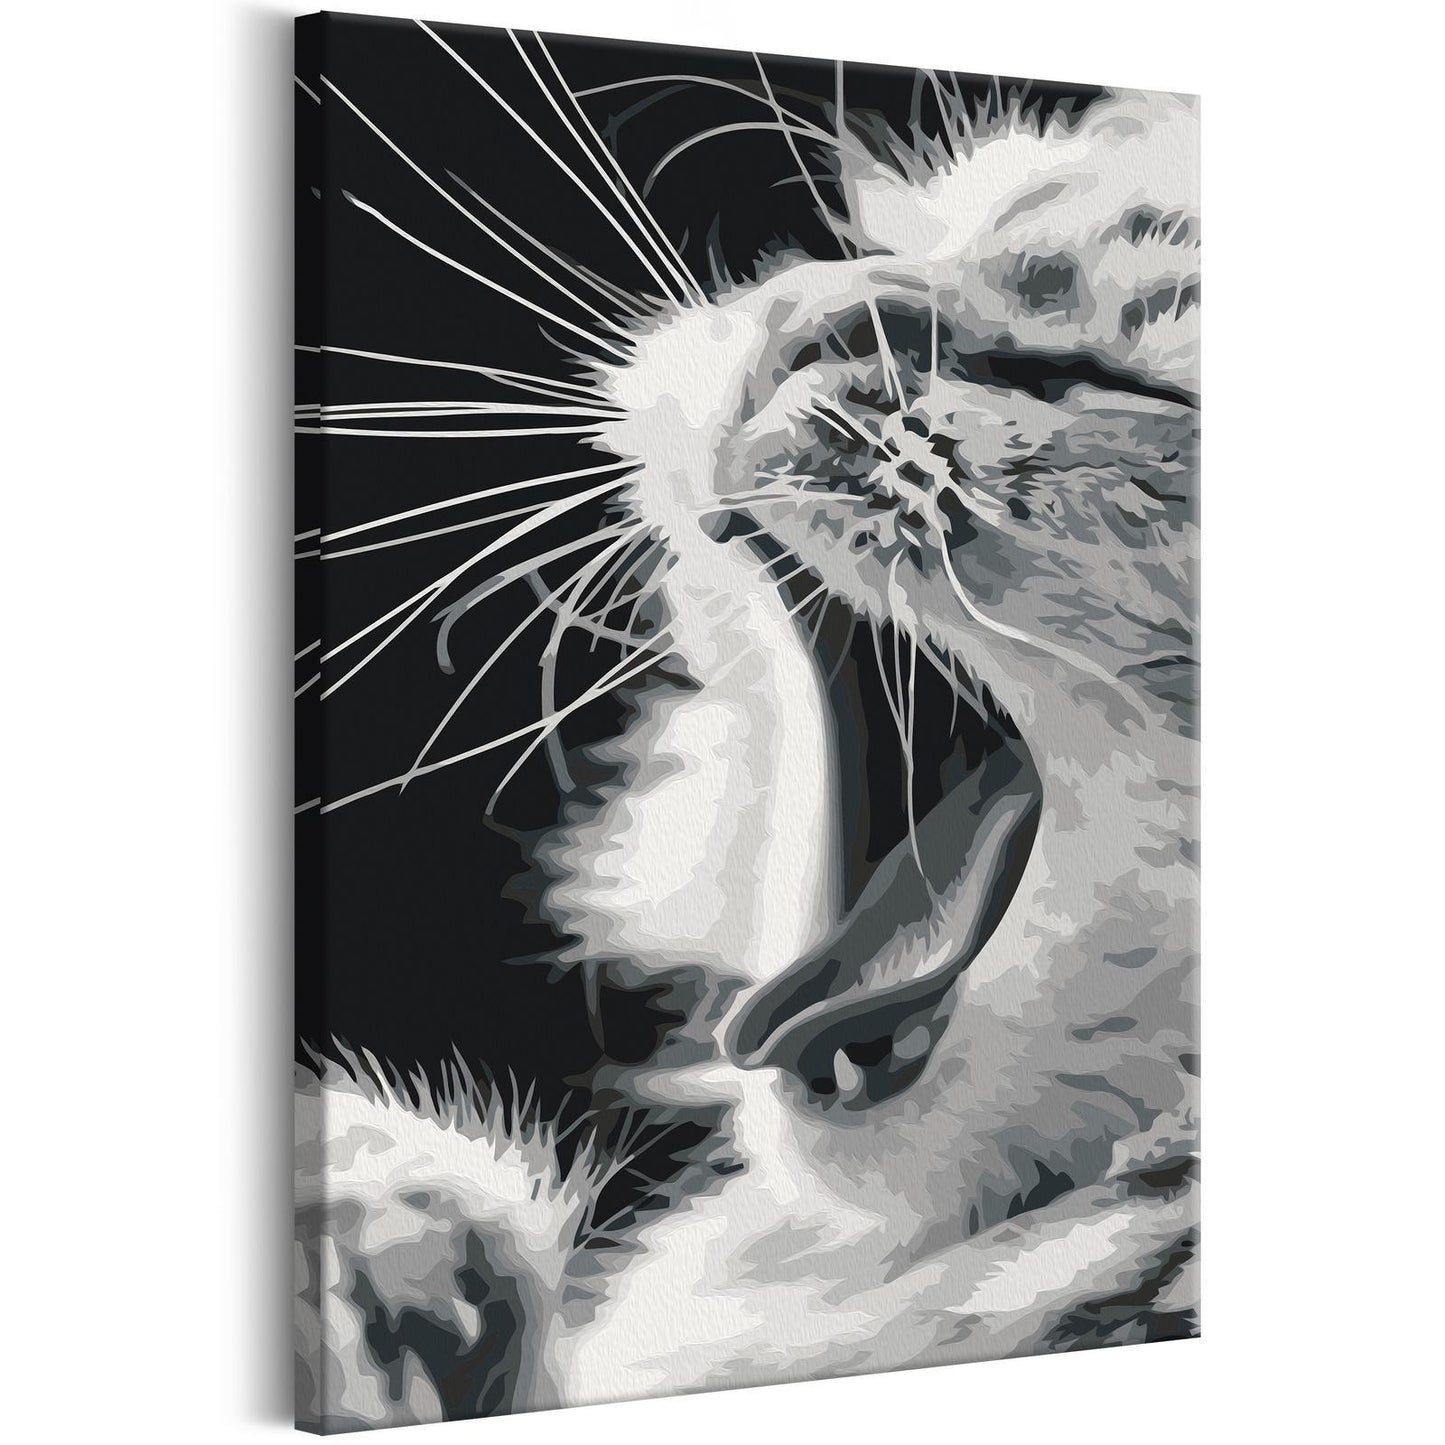 Doe-het-zelf op canvas schilderen - Yawning Kitten